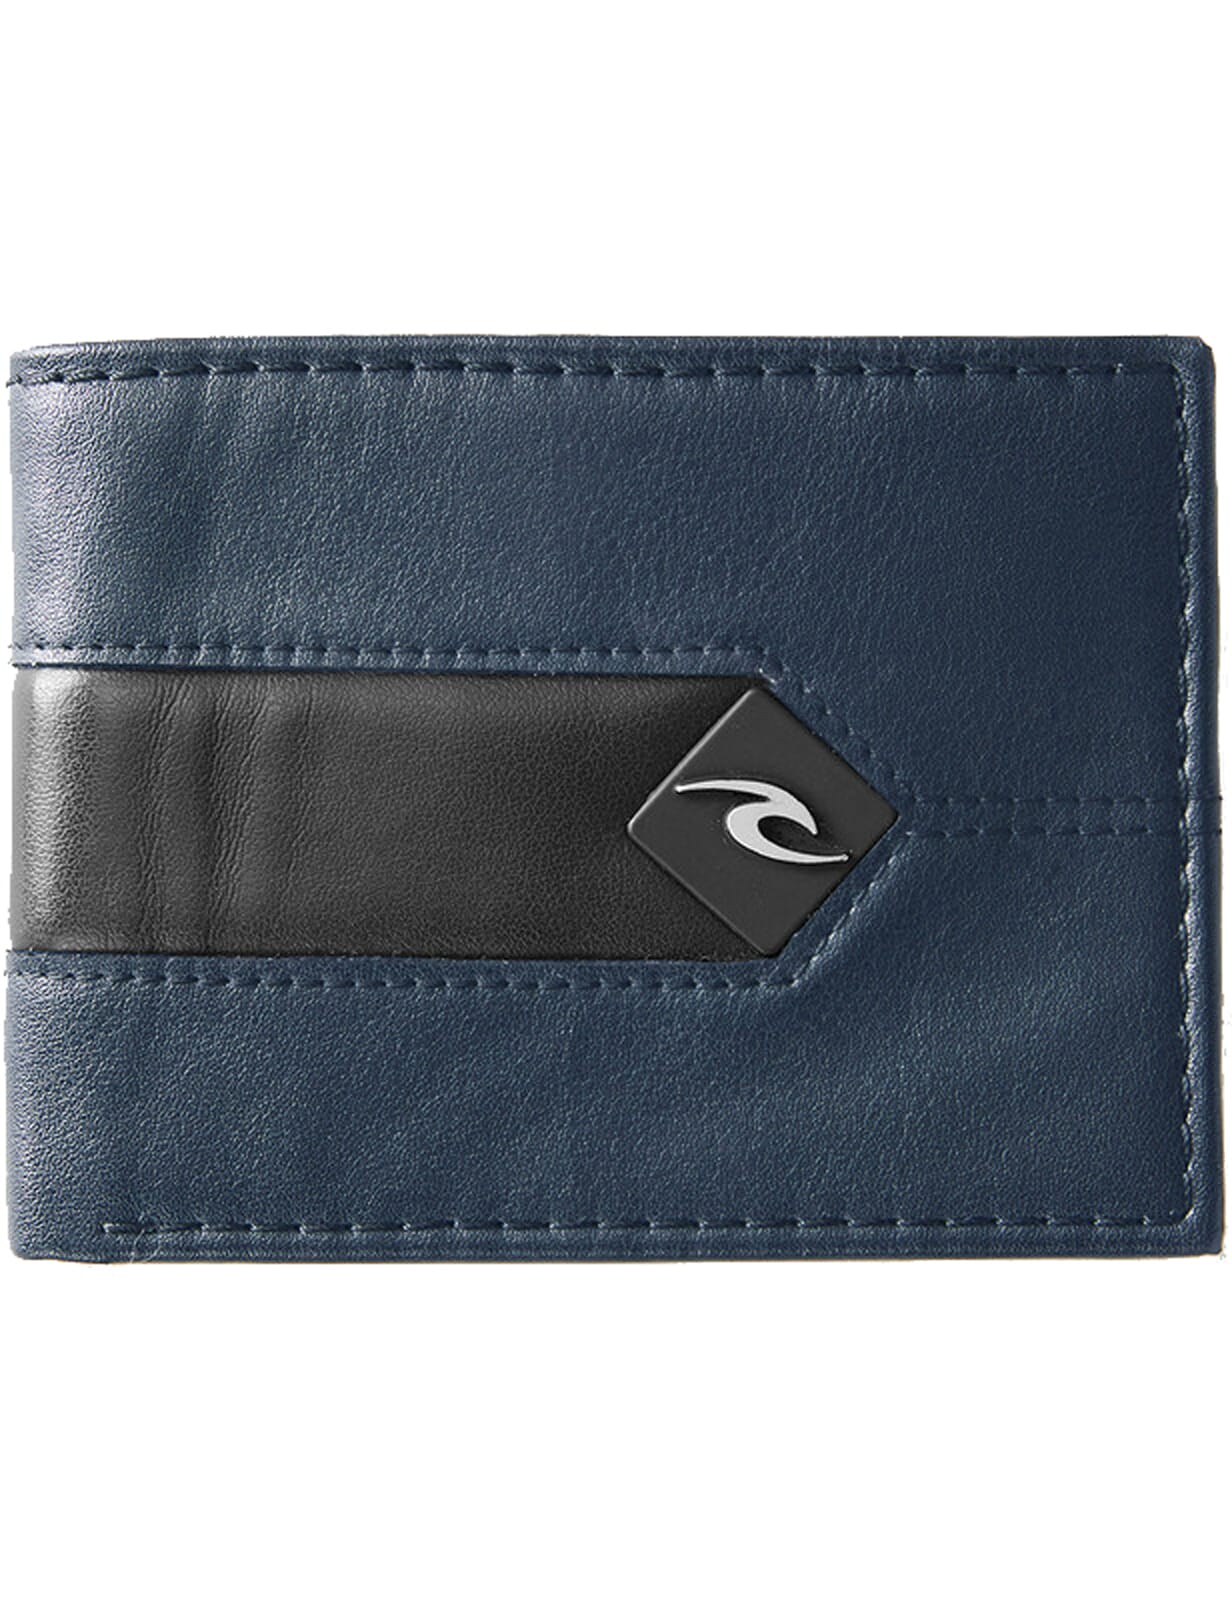 Rip Curl Undertow RFID Slim Leather Wallet in Brown 